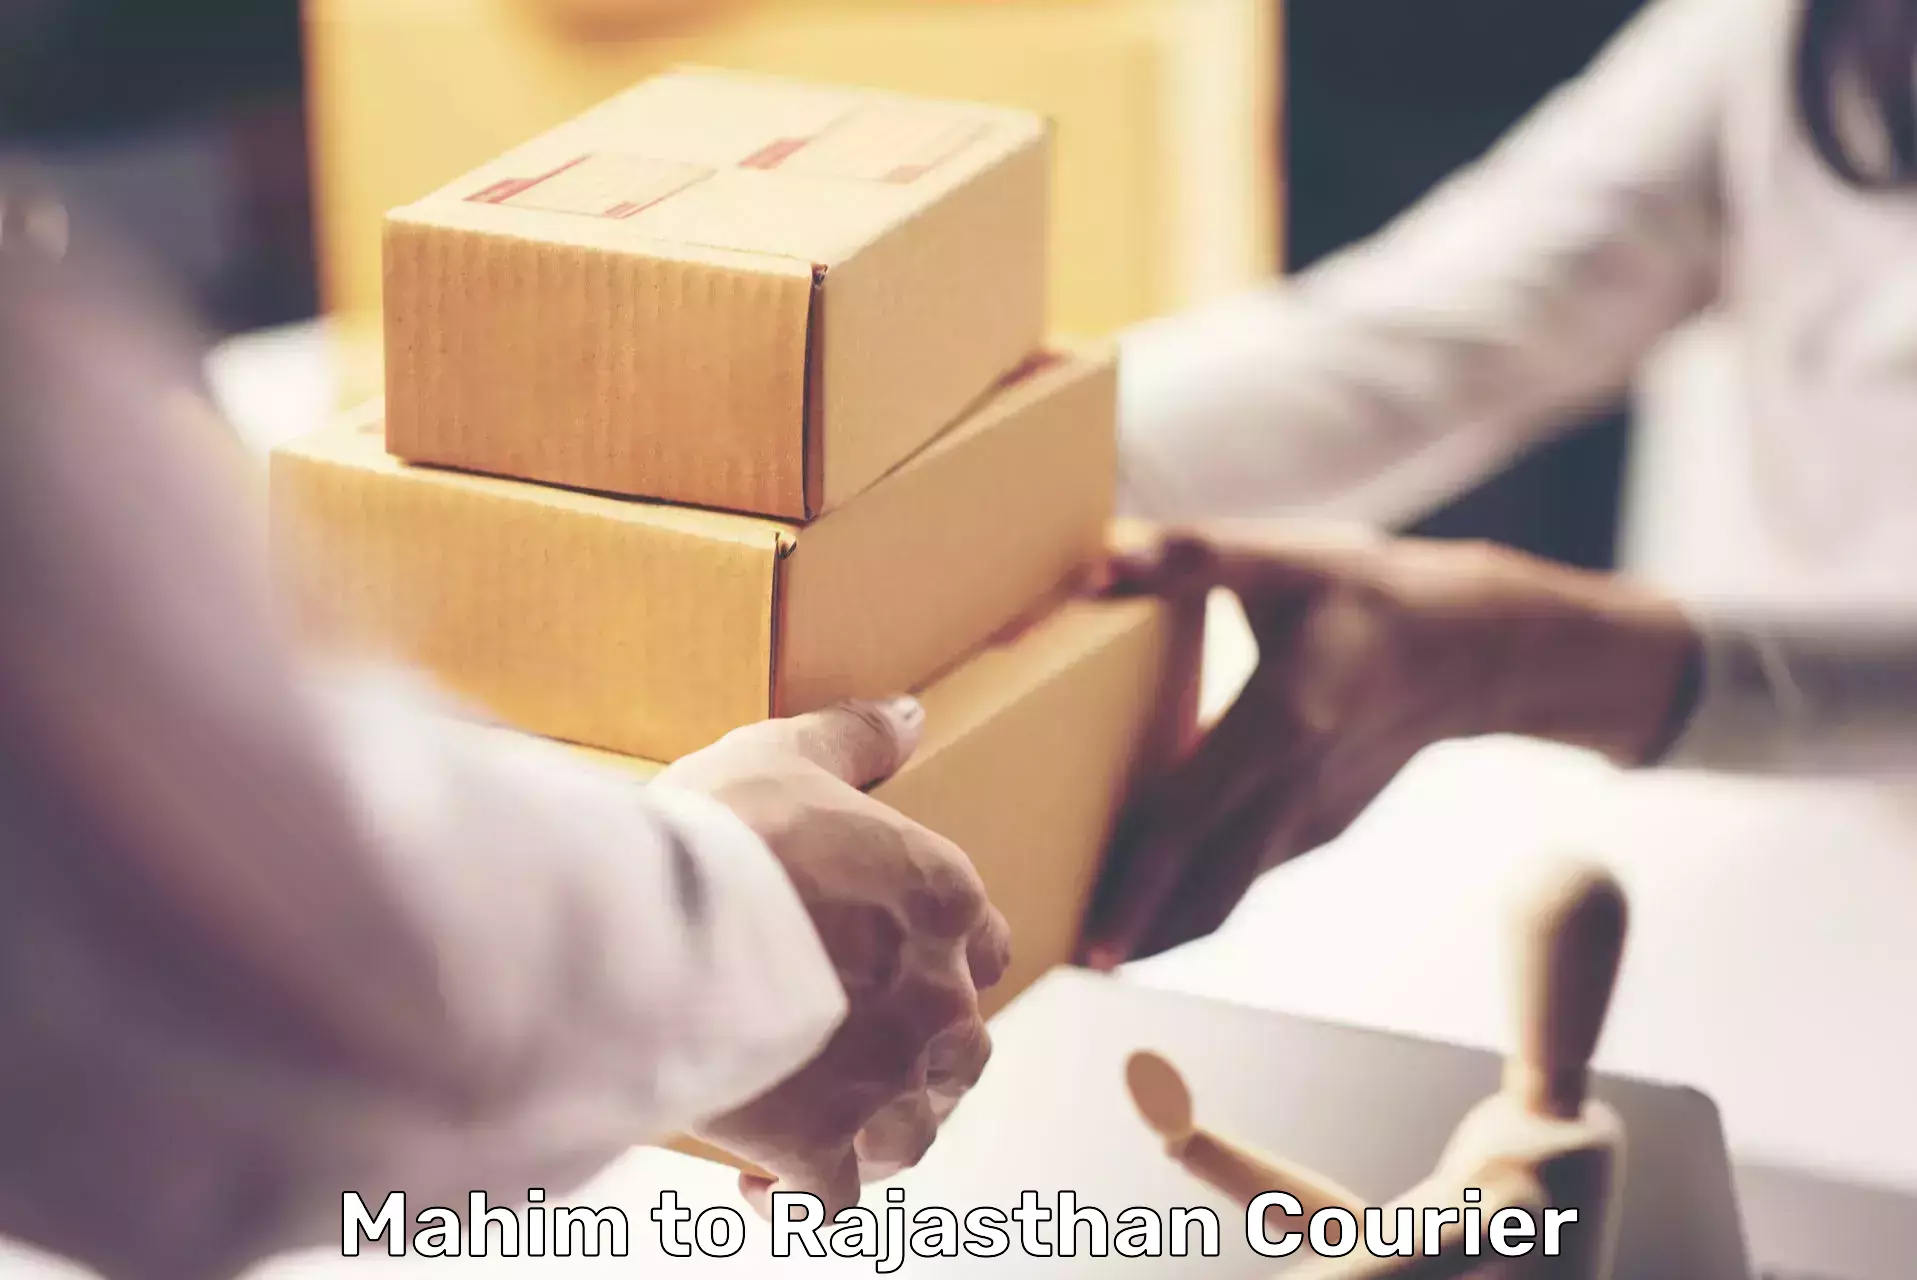 International parcel service Mahim to Churu